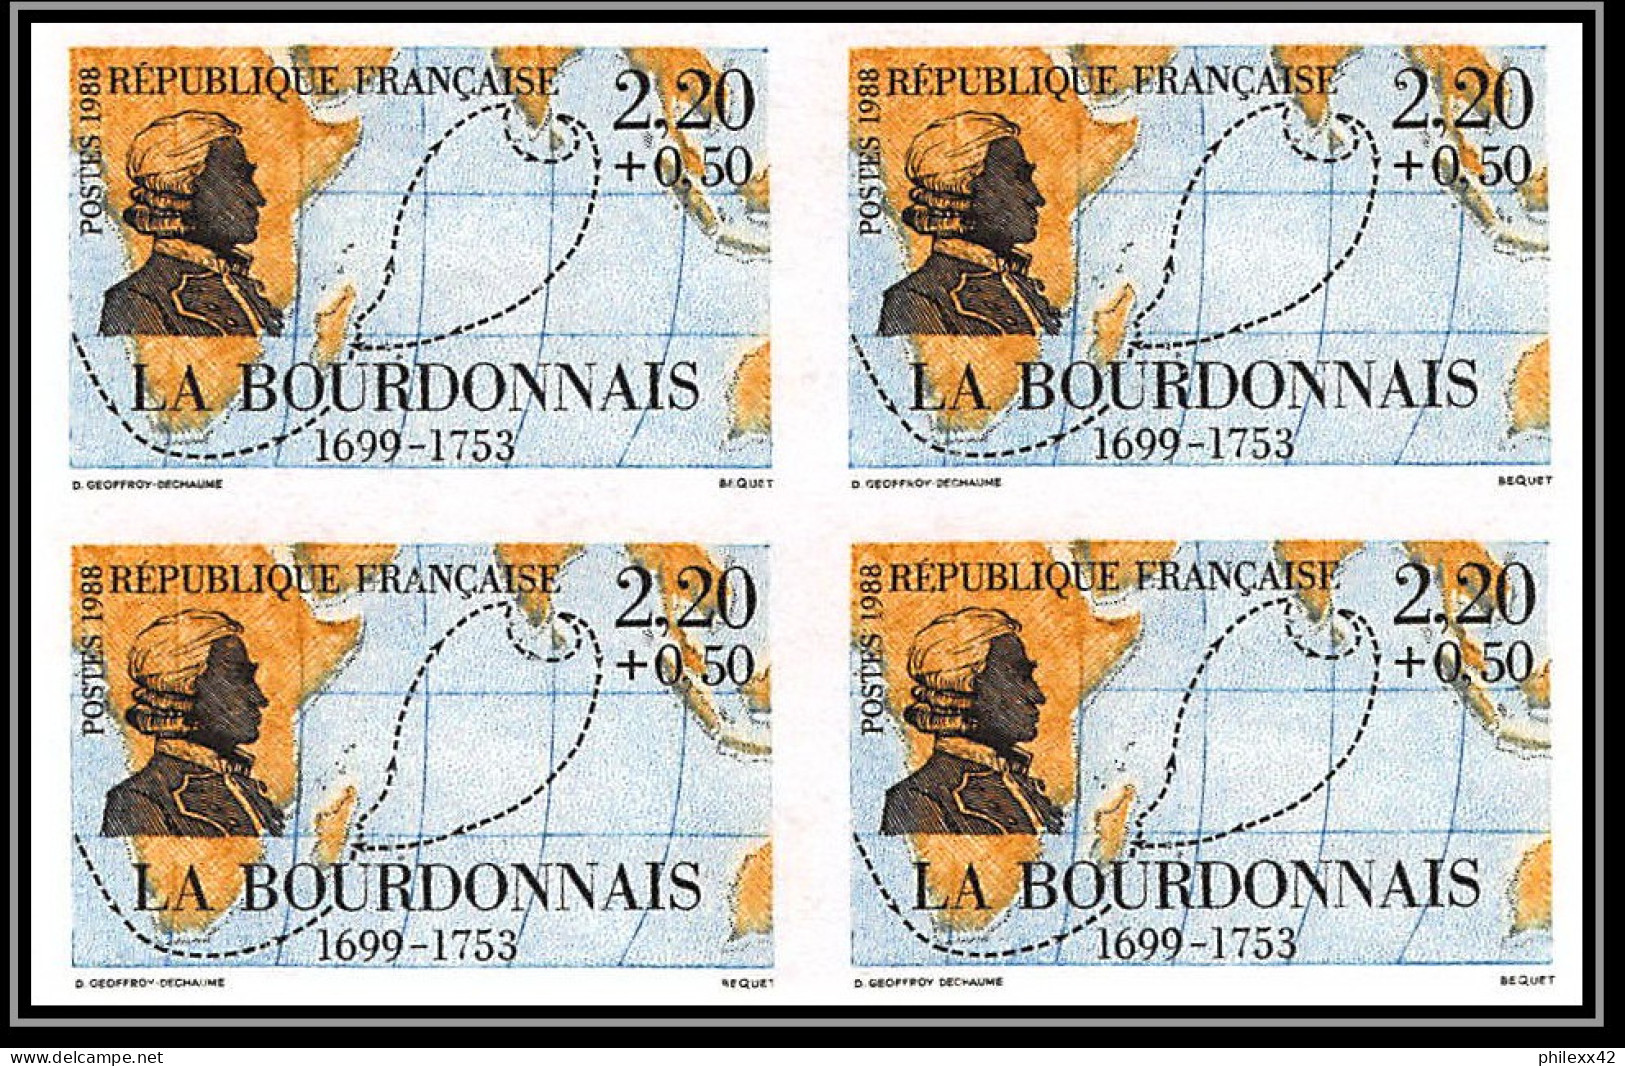 France N°2517 /2522 navigateurs francais maritime personnages 1988 Non dentelé ** MNH (Imperf) cote 440 bloc 4